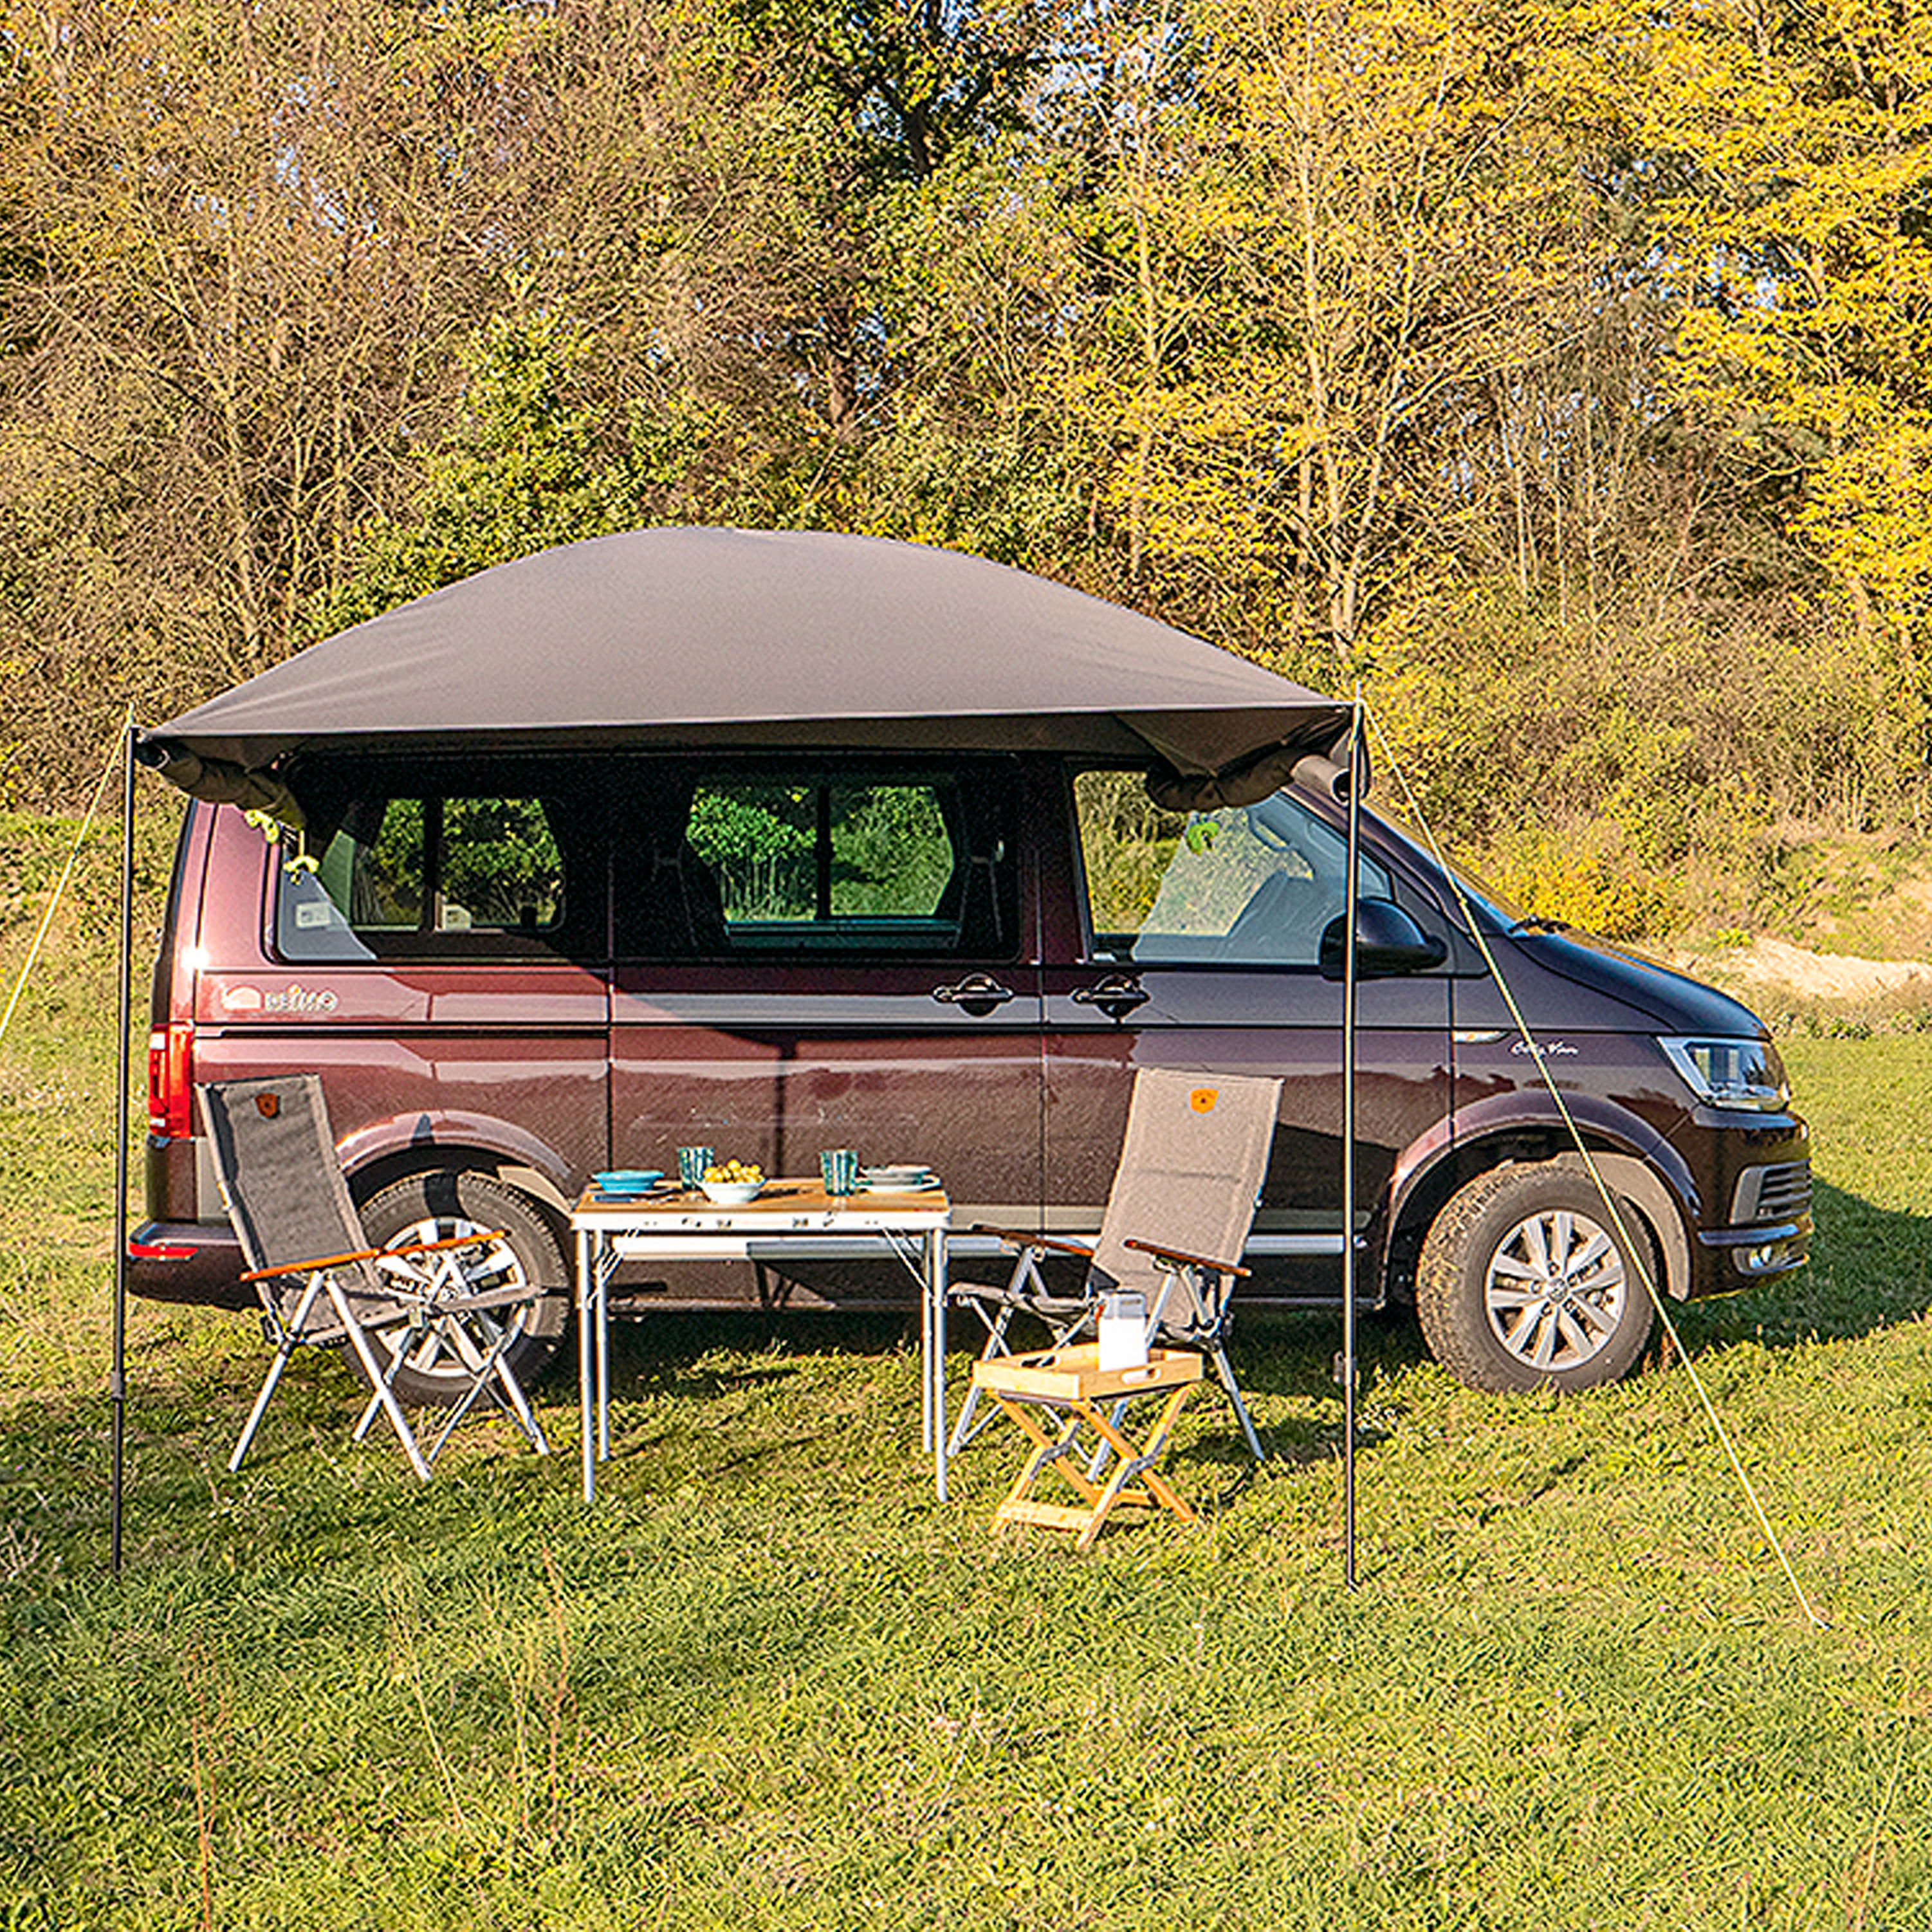 Sonnenblenden-Verlängerung für PKW und Wohnmobile bei Camping Wagner  Campingzubehör